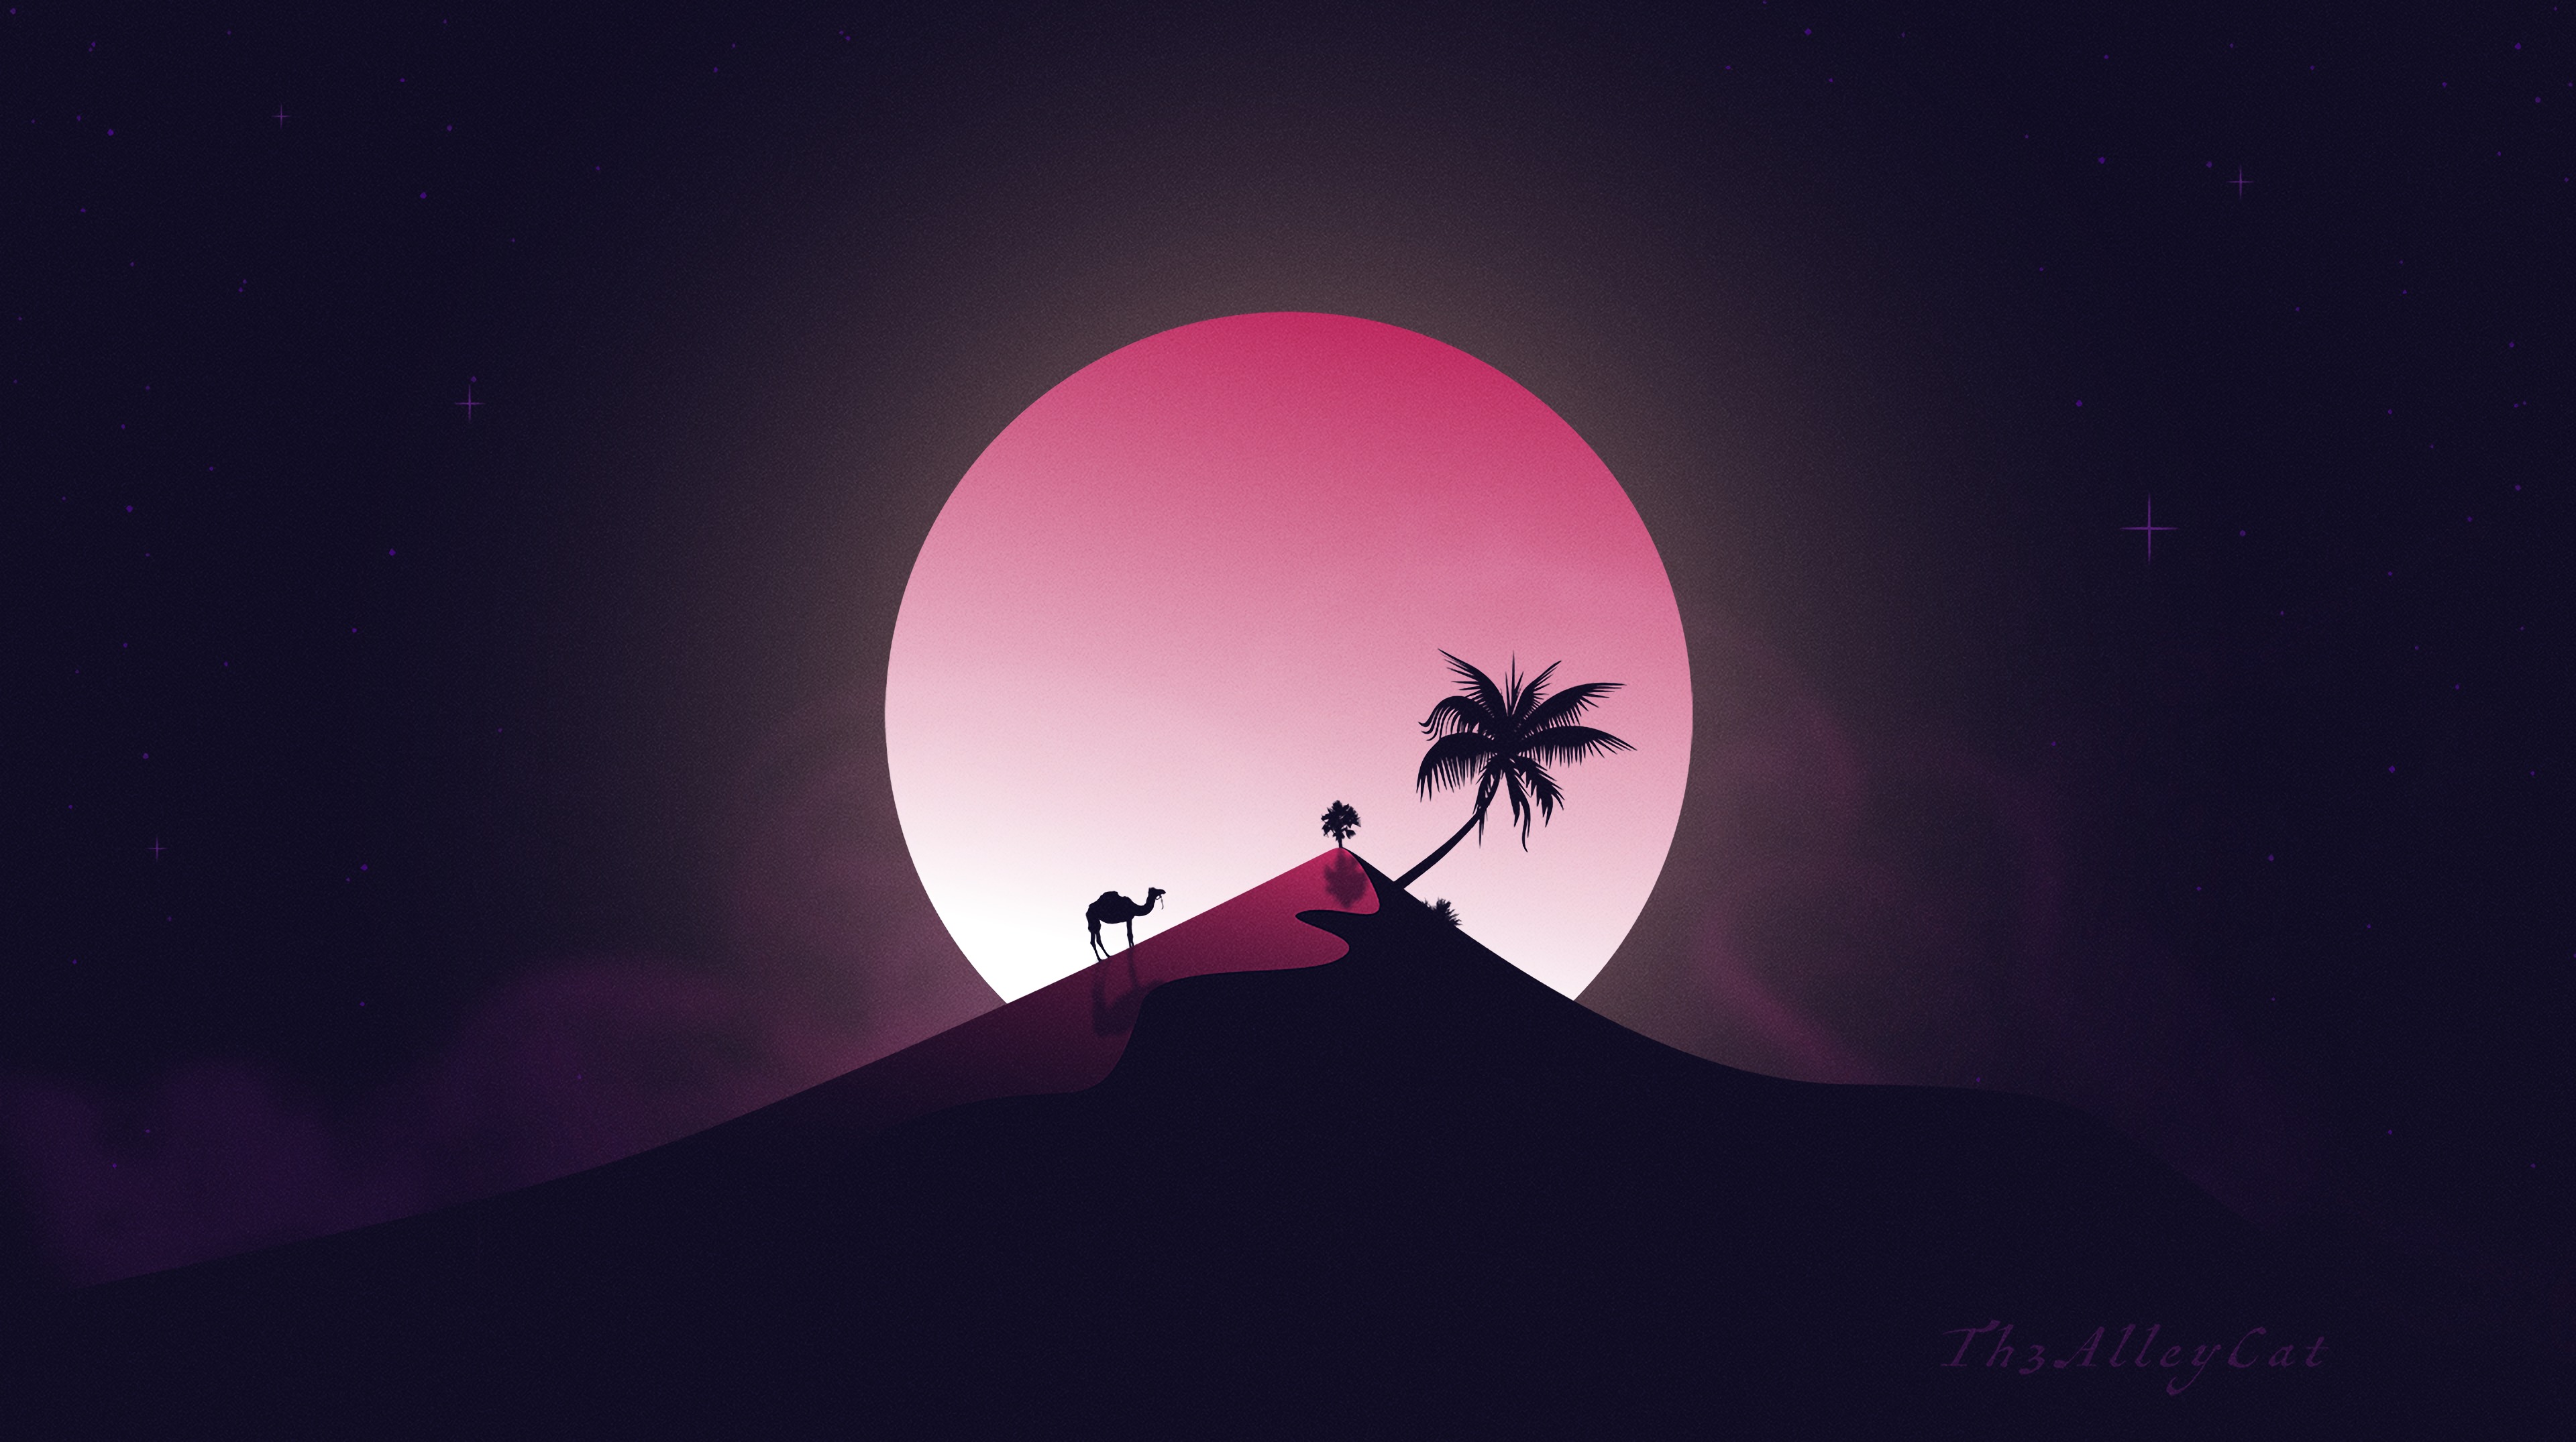 hill, palm, desert, art, moon, camel